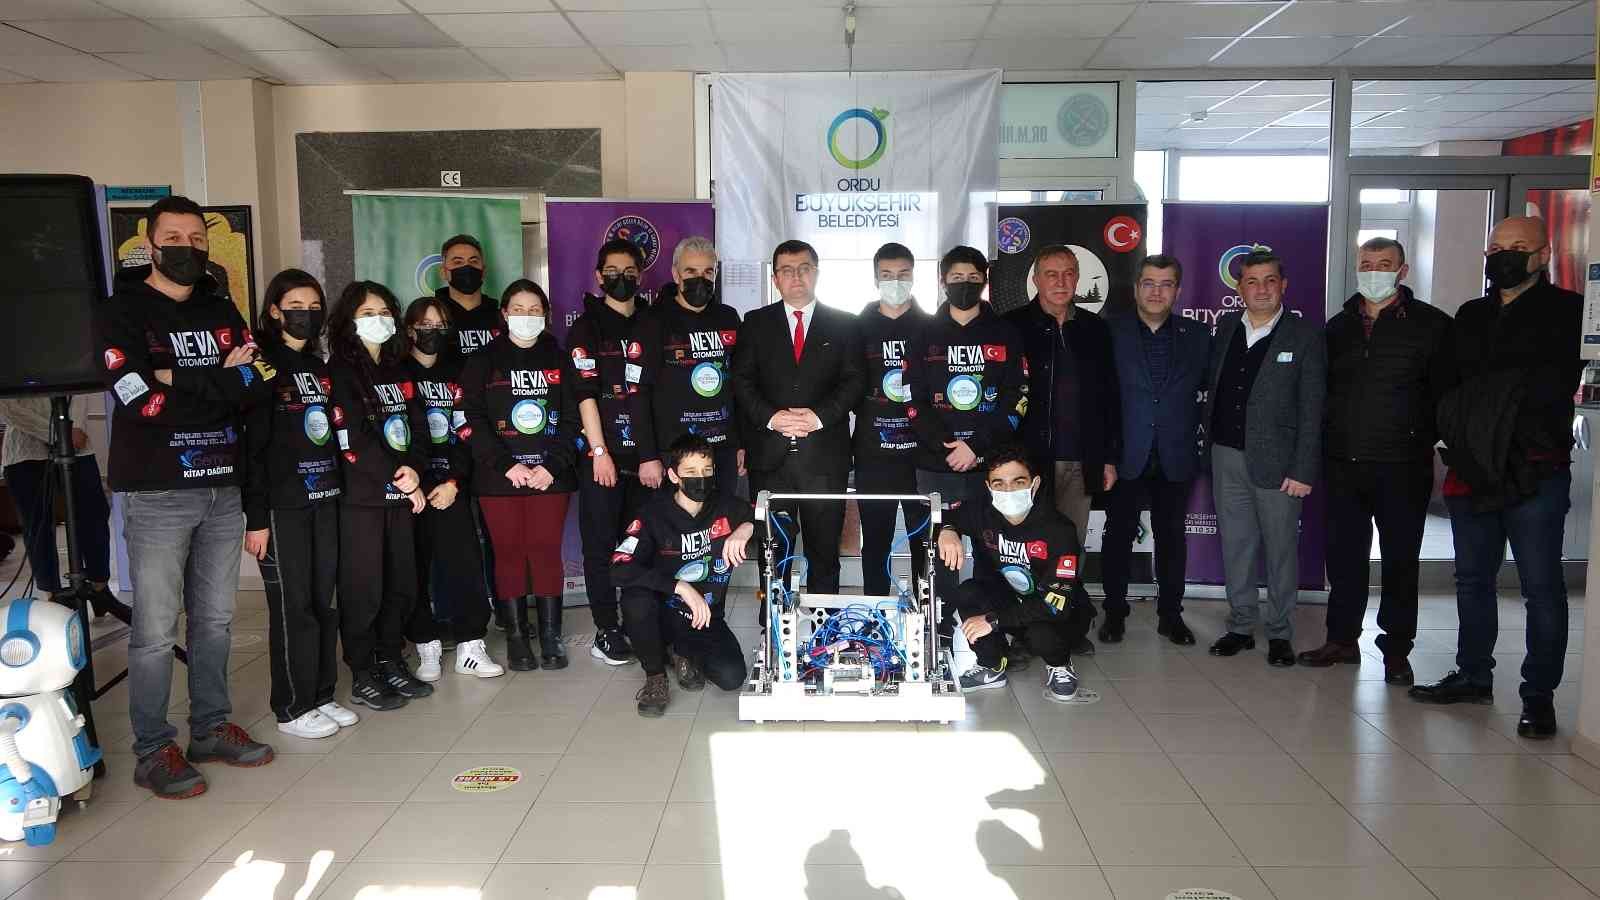 Ordulu öğrenciler, Kanada’daki robotik yarışmada Türkiye’yi temsil edecek